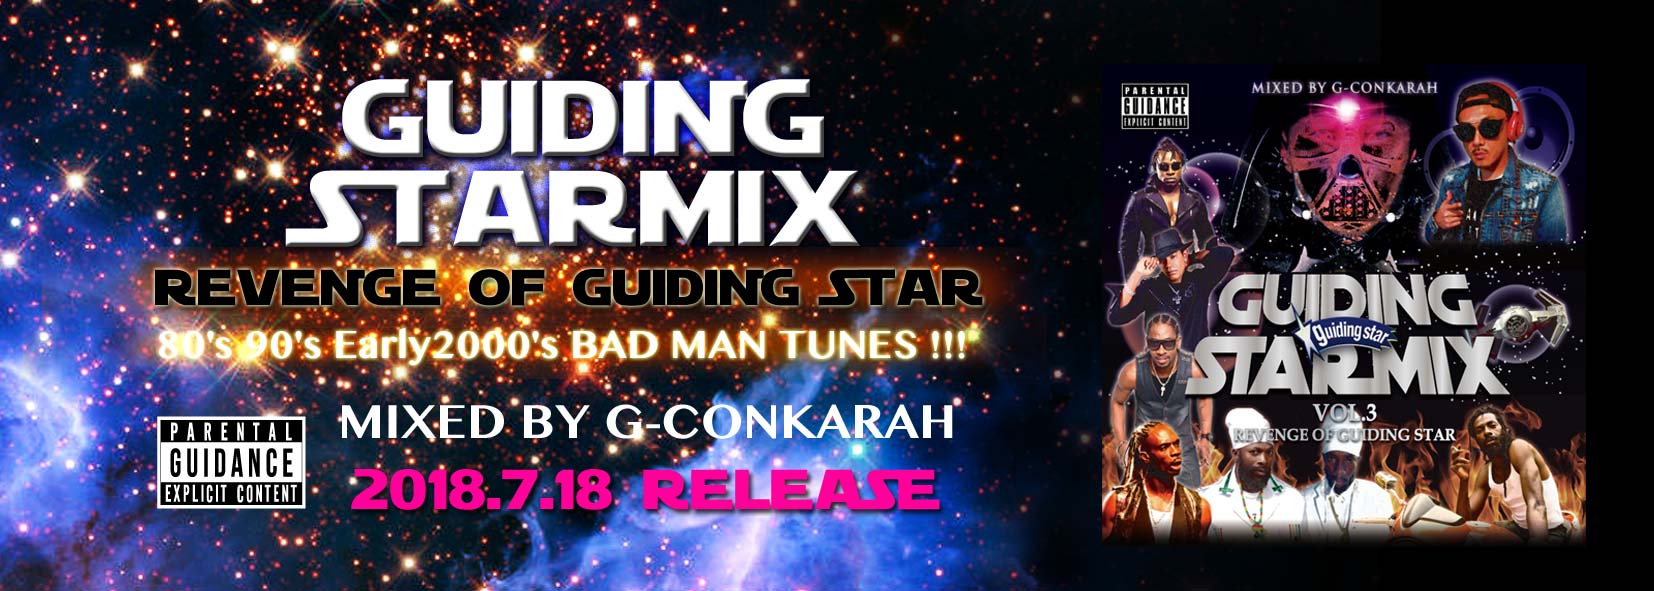 GUIDING STAR MIX VOL.3 -REVENGE OF GUIDING STAR-